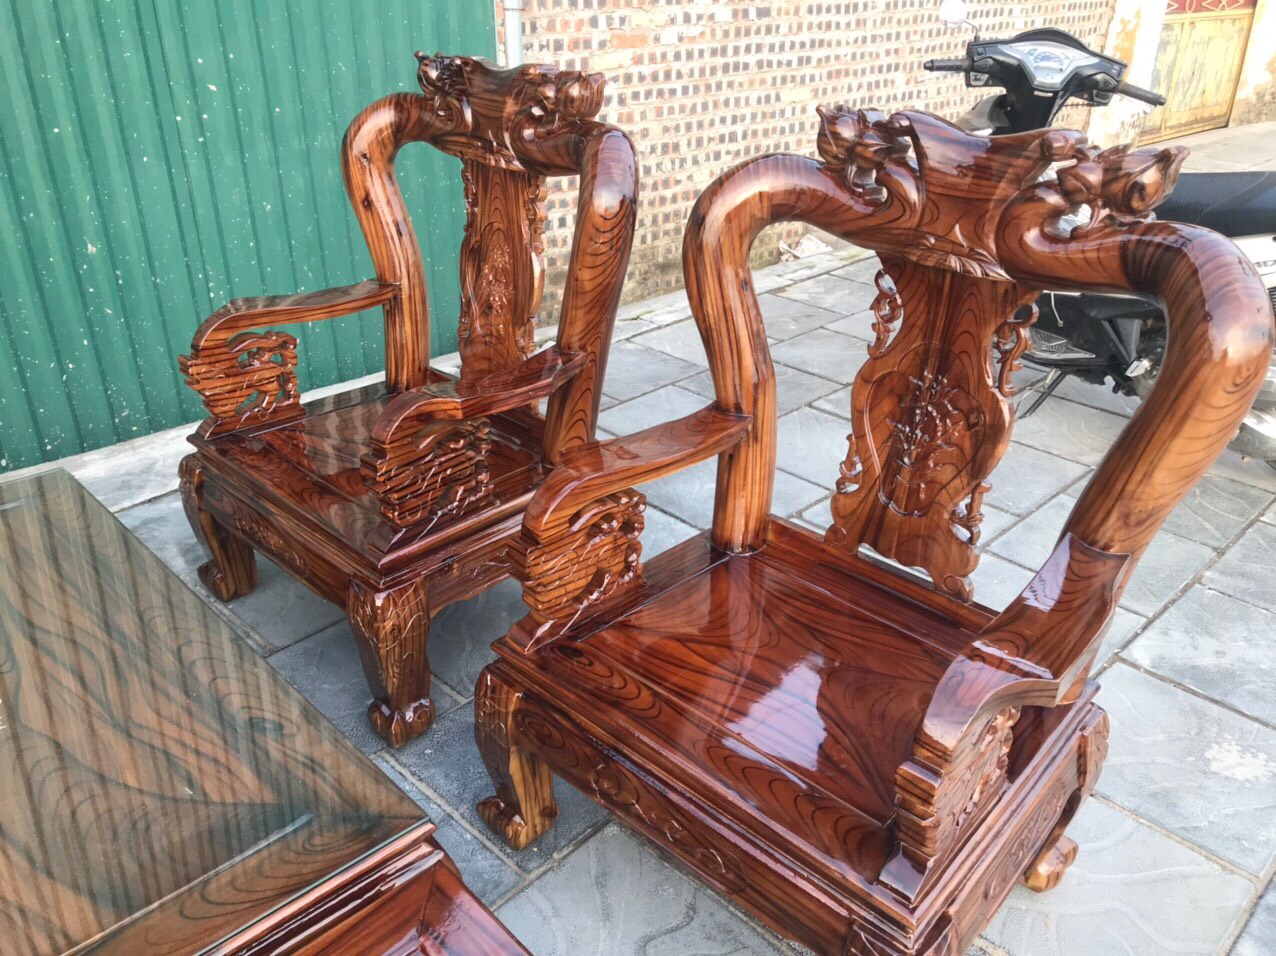 Bộ bàn ghế Minh Quốc Đào gỗ tràm phun giả mun